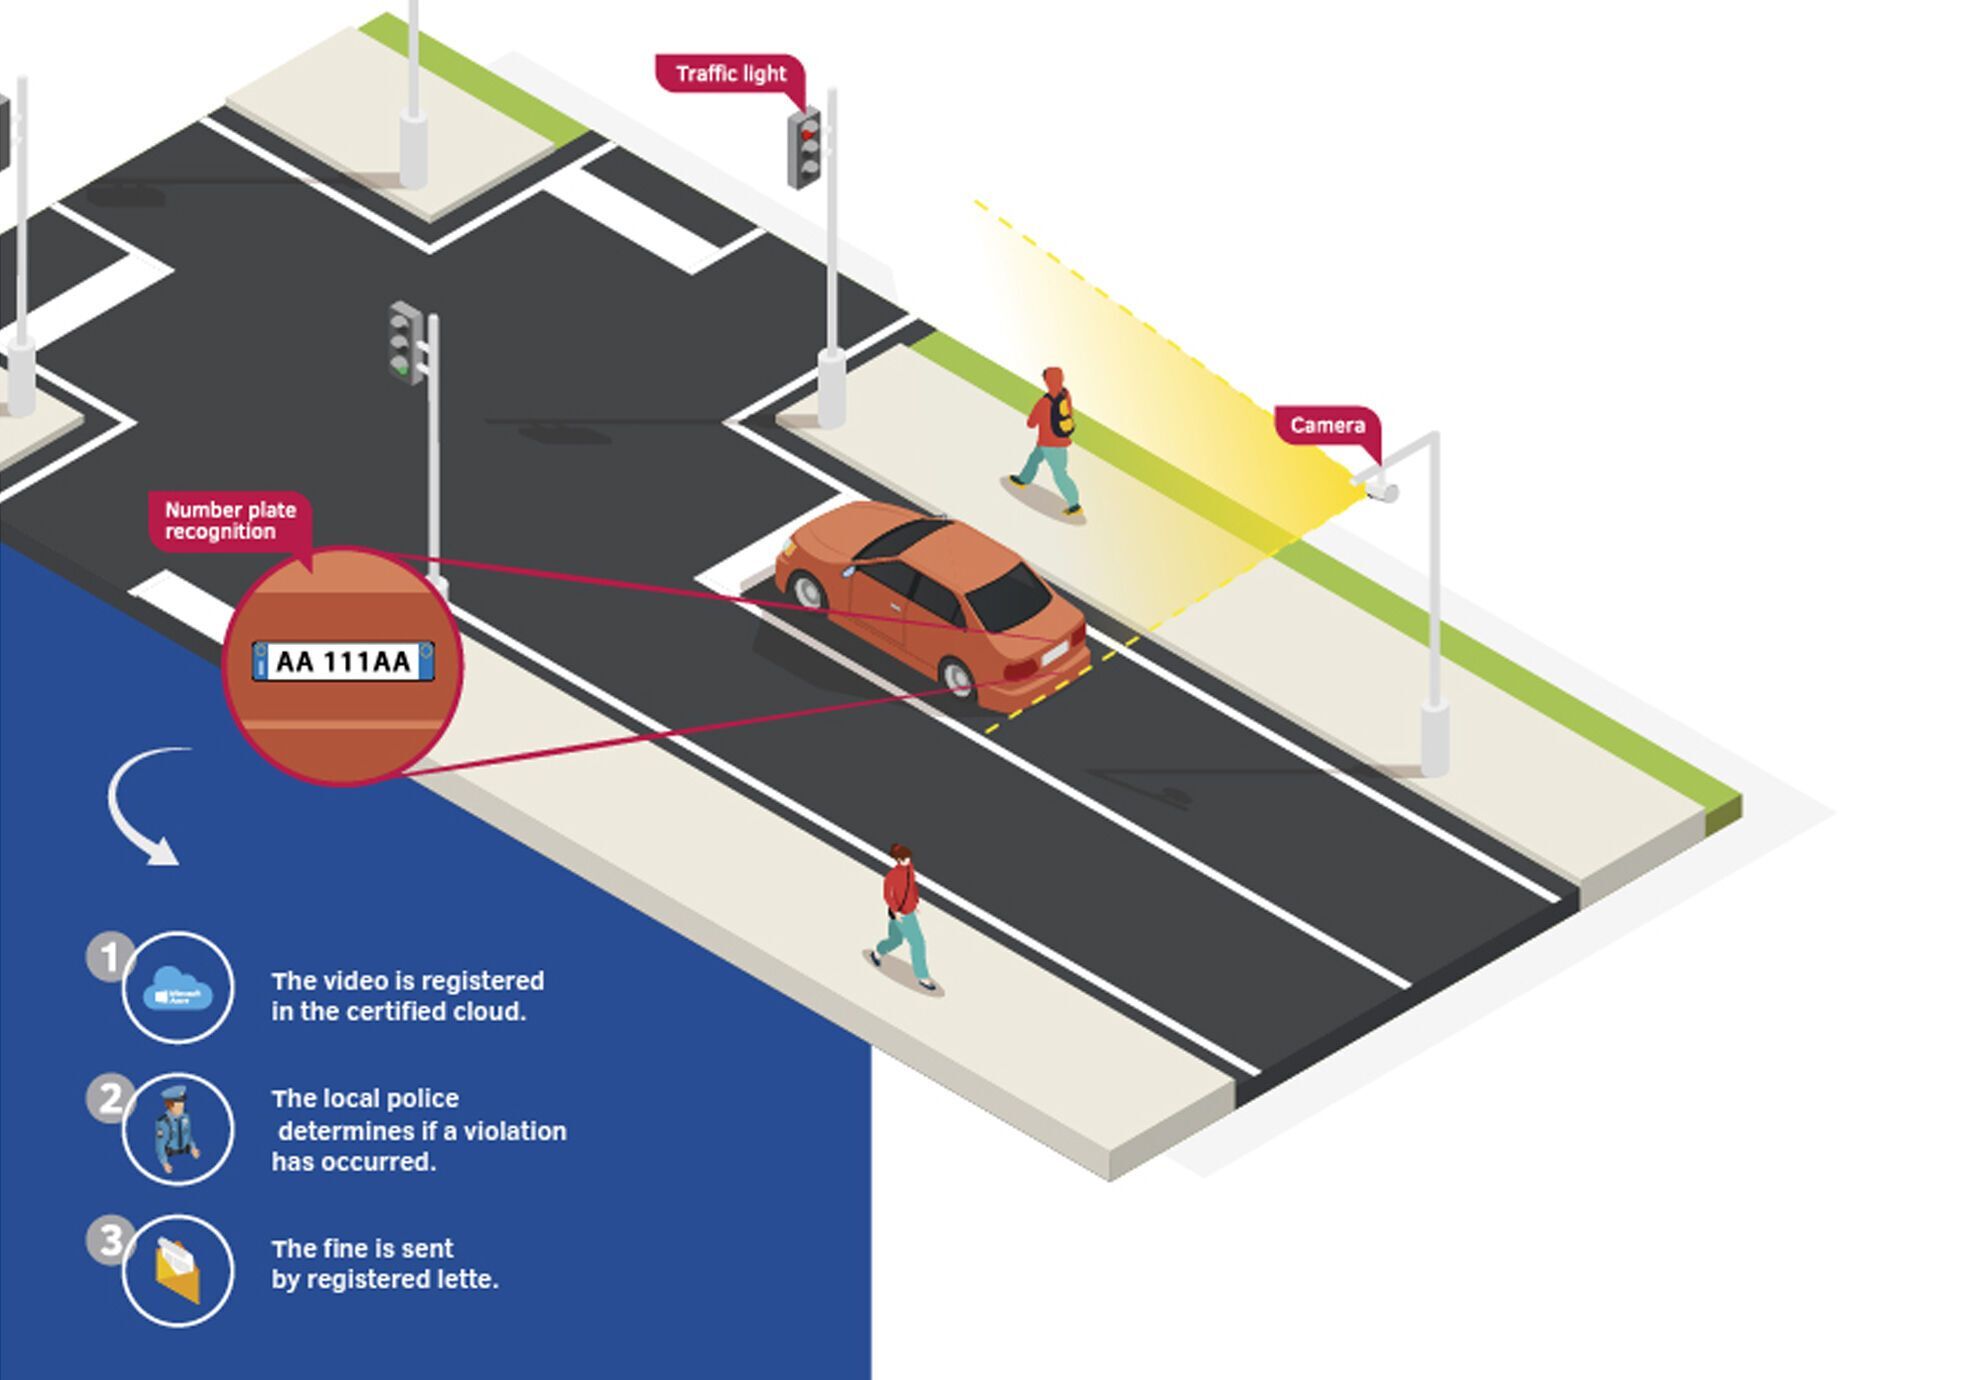 Система контролирует участок дороги со светофором и разметкой, а также способна распознавать номерные знаки авто